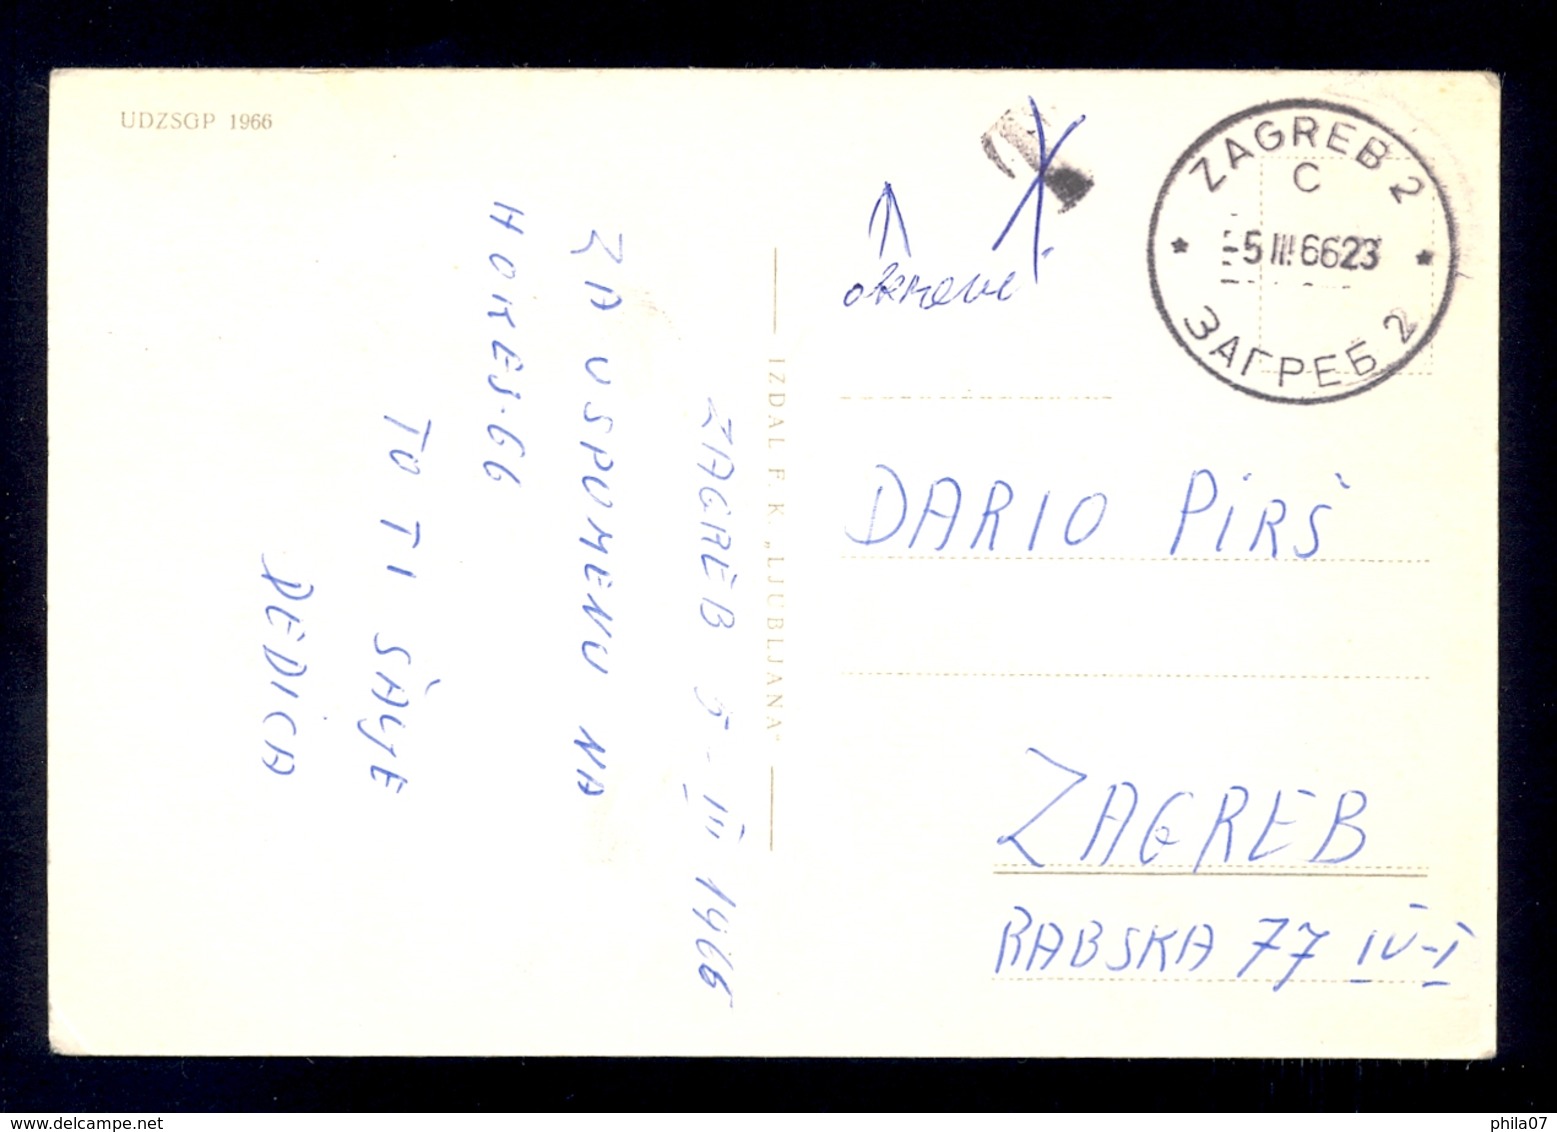 YUGOSLAVIA 1966 - Commemorative Card, Stamp And Cancel HOCKEY Championship Sent To Zagreb - Eishockey